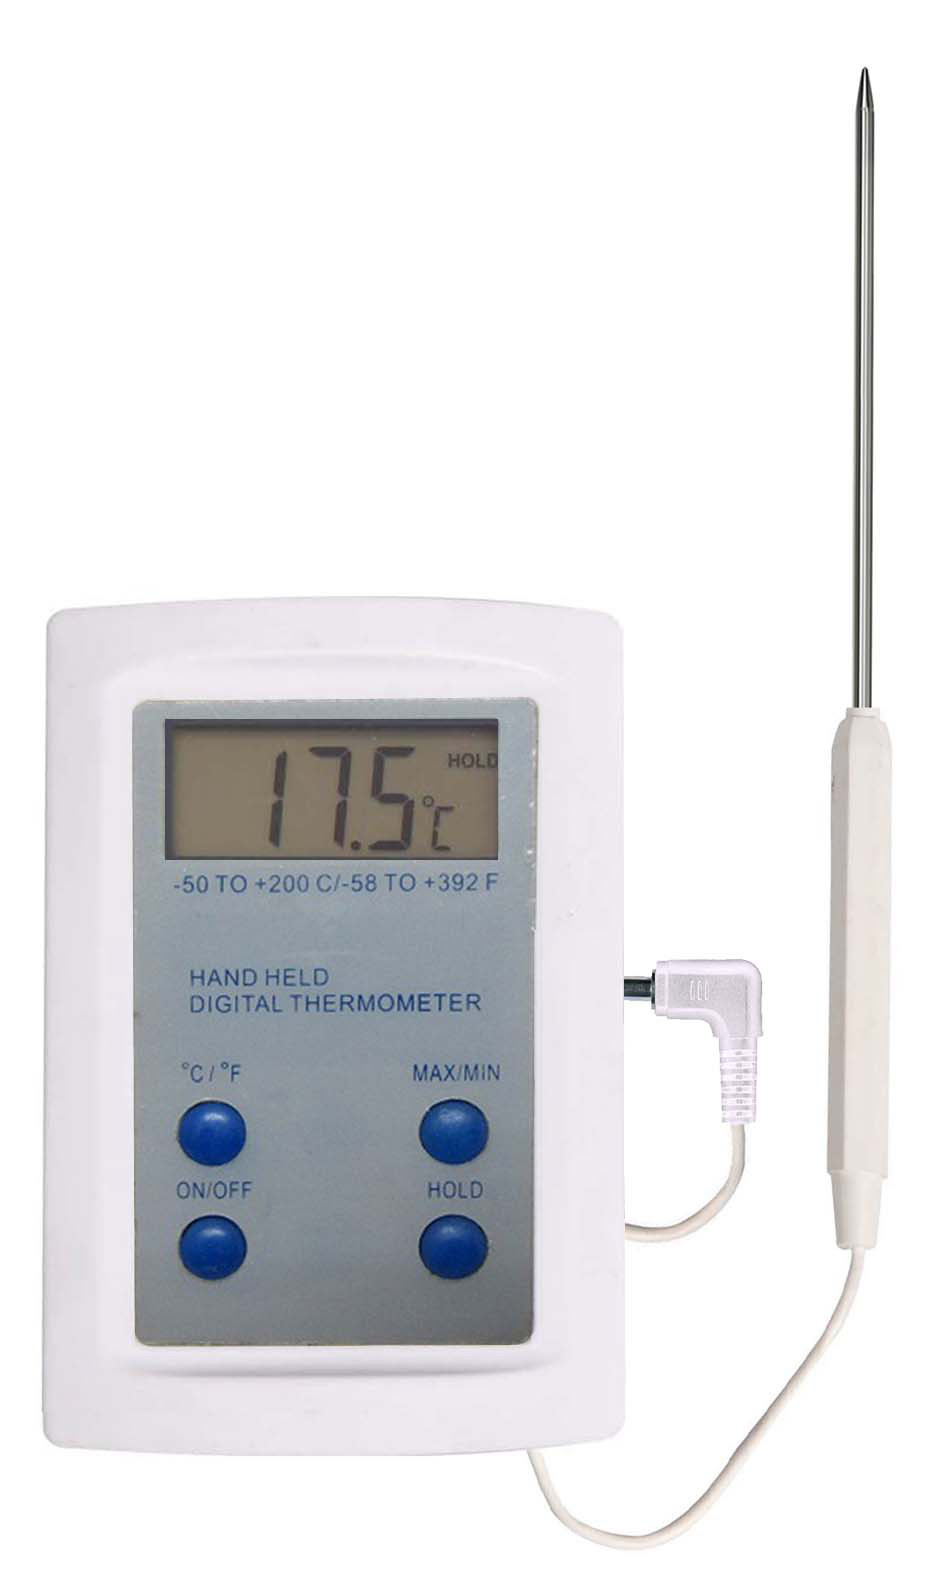 Thermomètre digital à sonde amovible - Petits matériels divers :  thermomètres - Microbiologie : analyses et mesures - Matériel de laboratoire